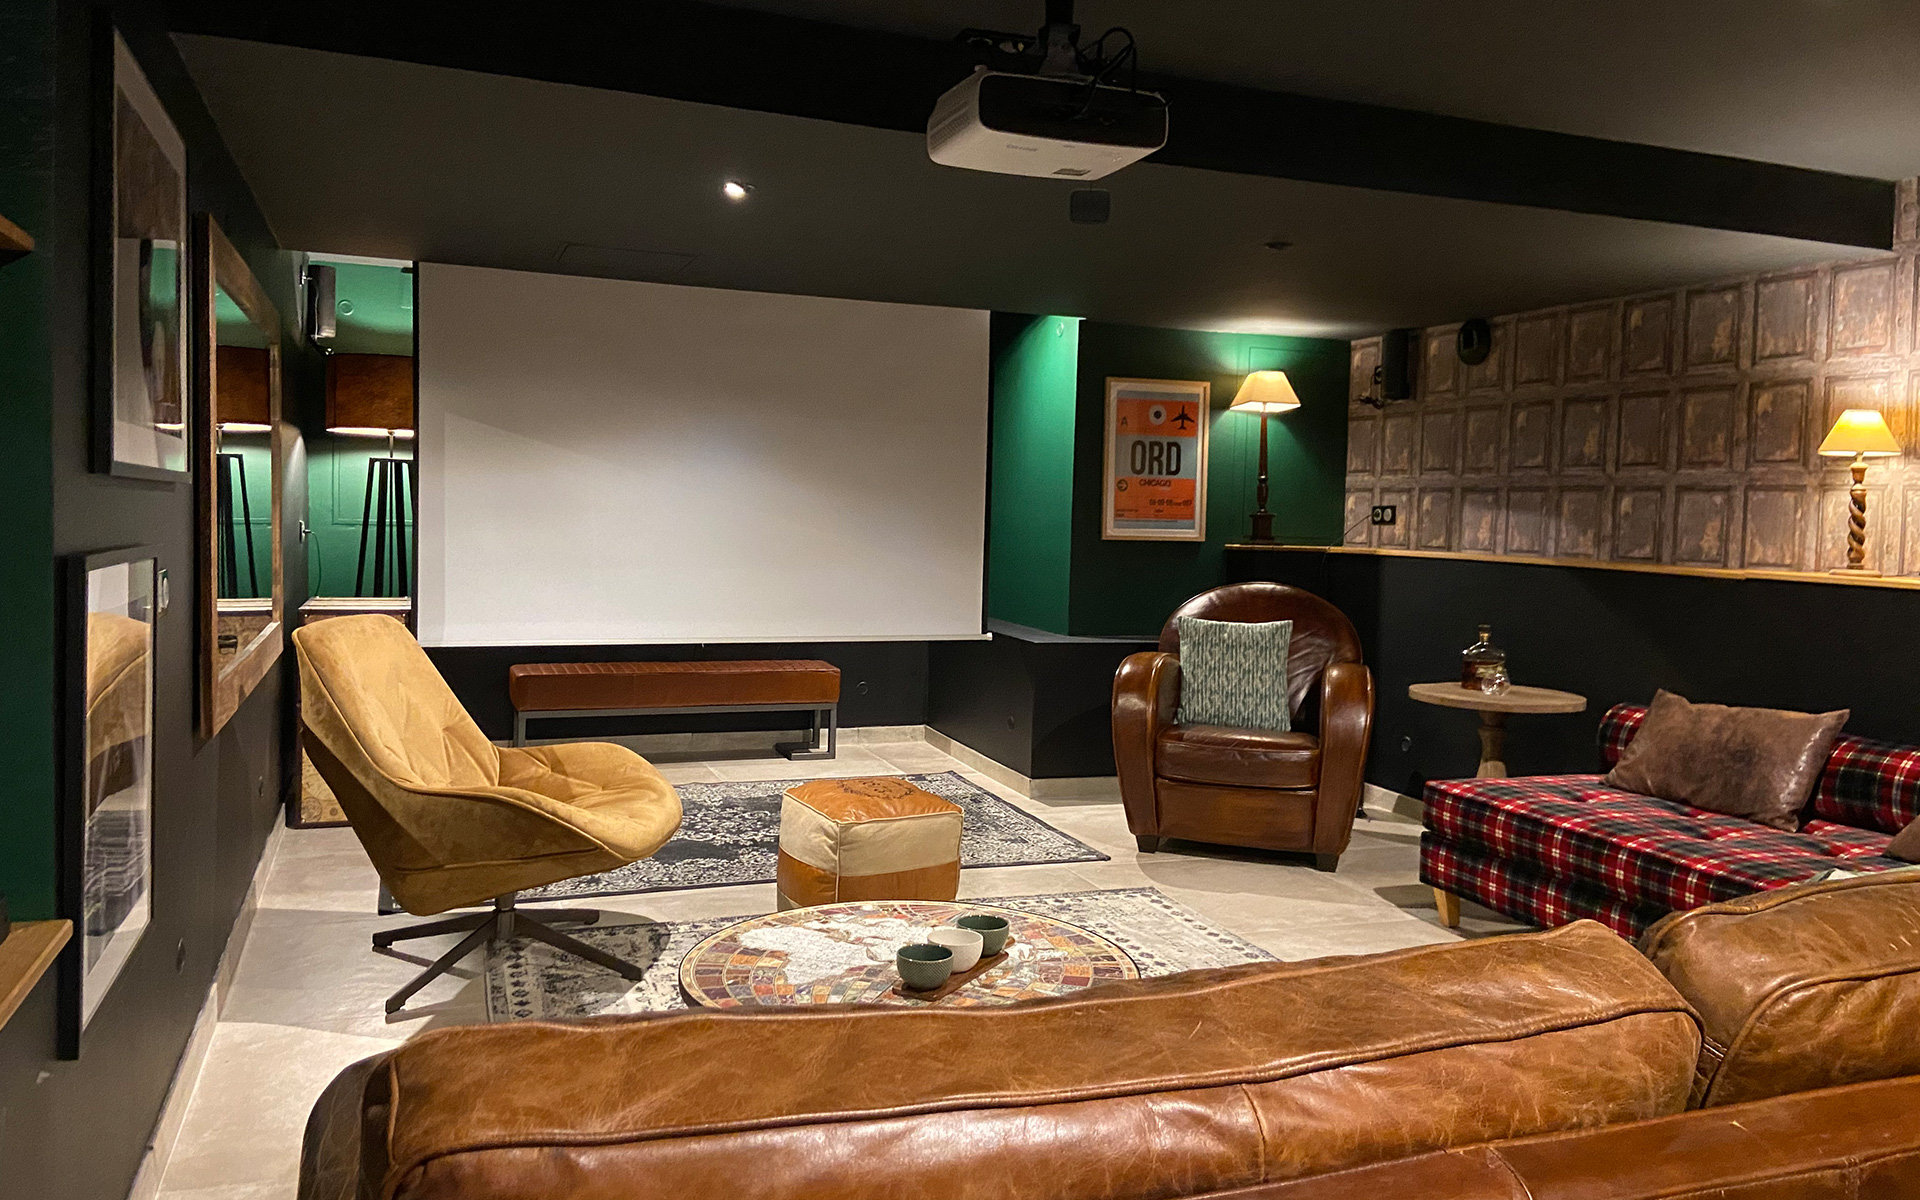 salon-souplex-club-irlandais-home-cinema@delphineguyart.com